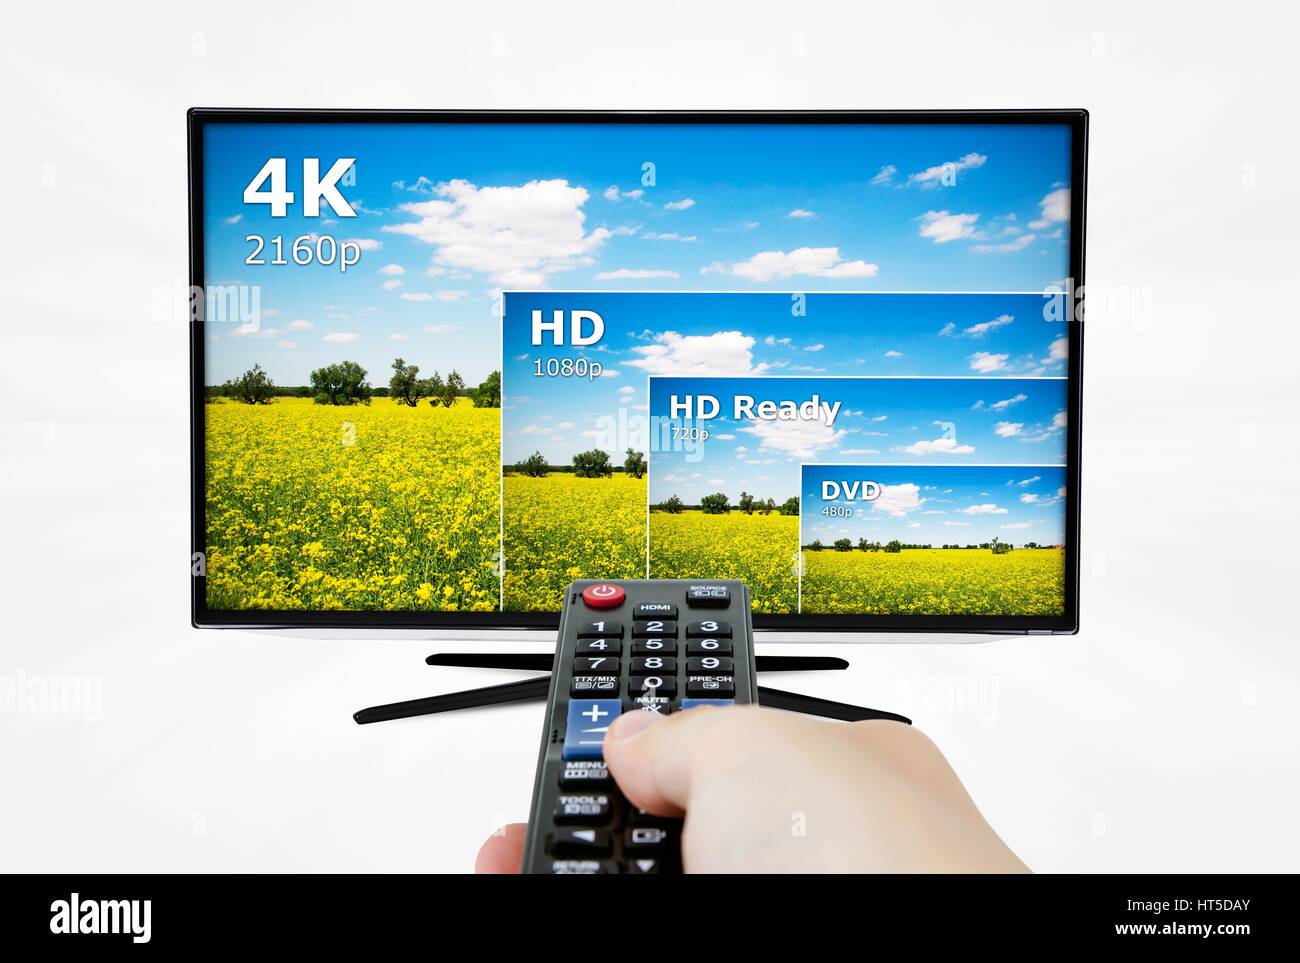 4K écran de télévision avec comparaison des résolutions. Télécommande en main Banque D'Images